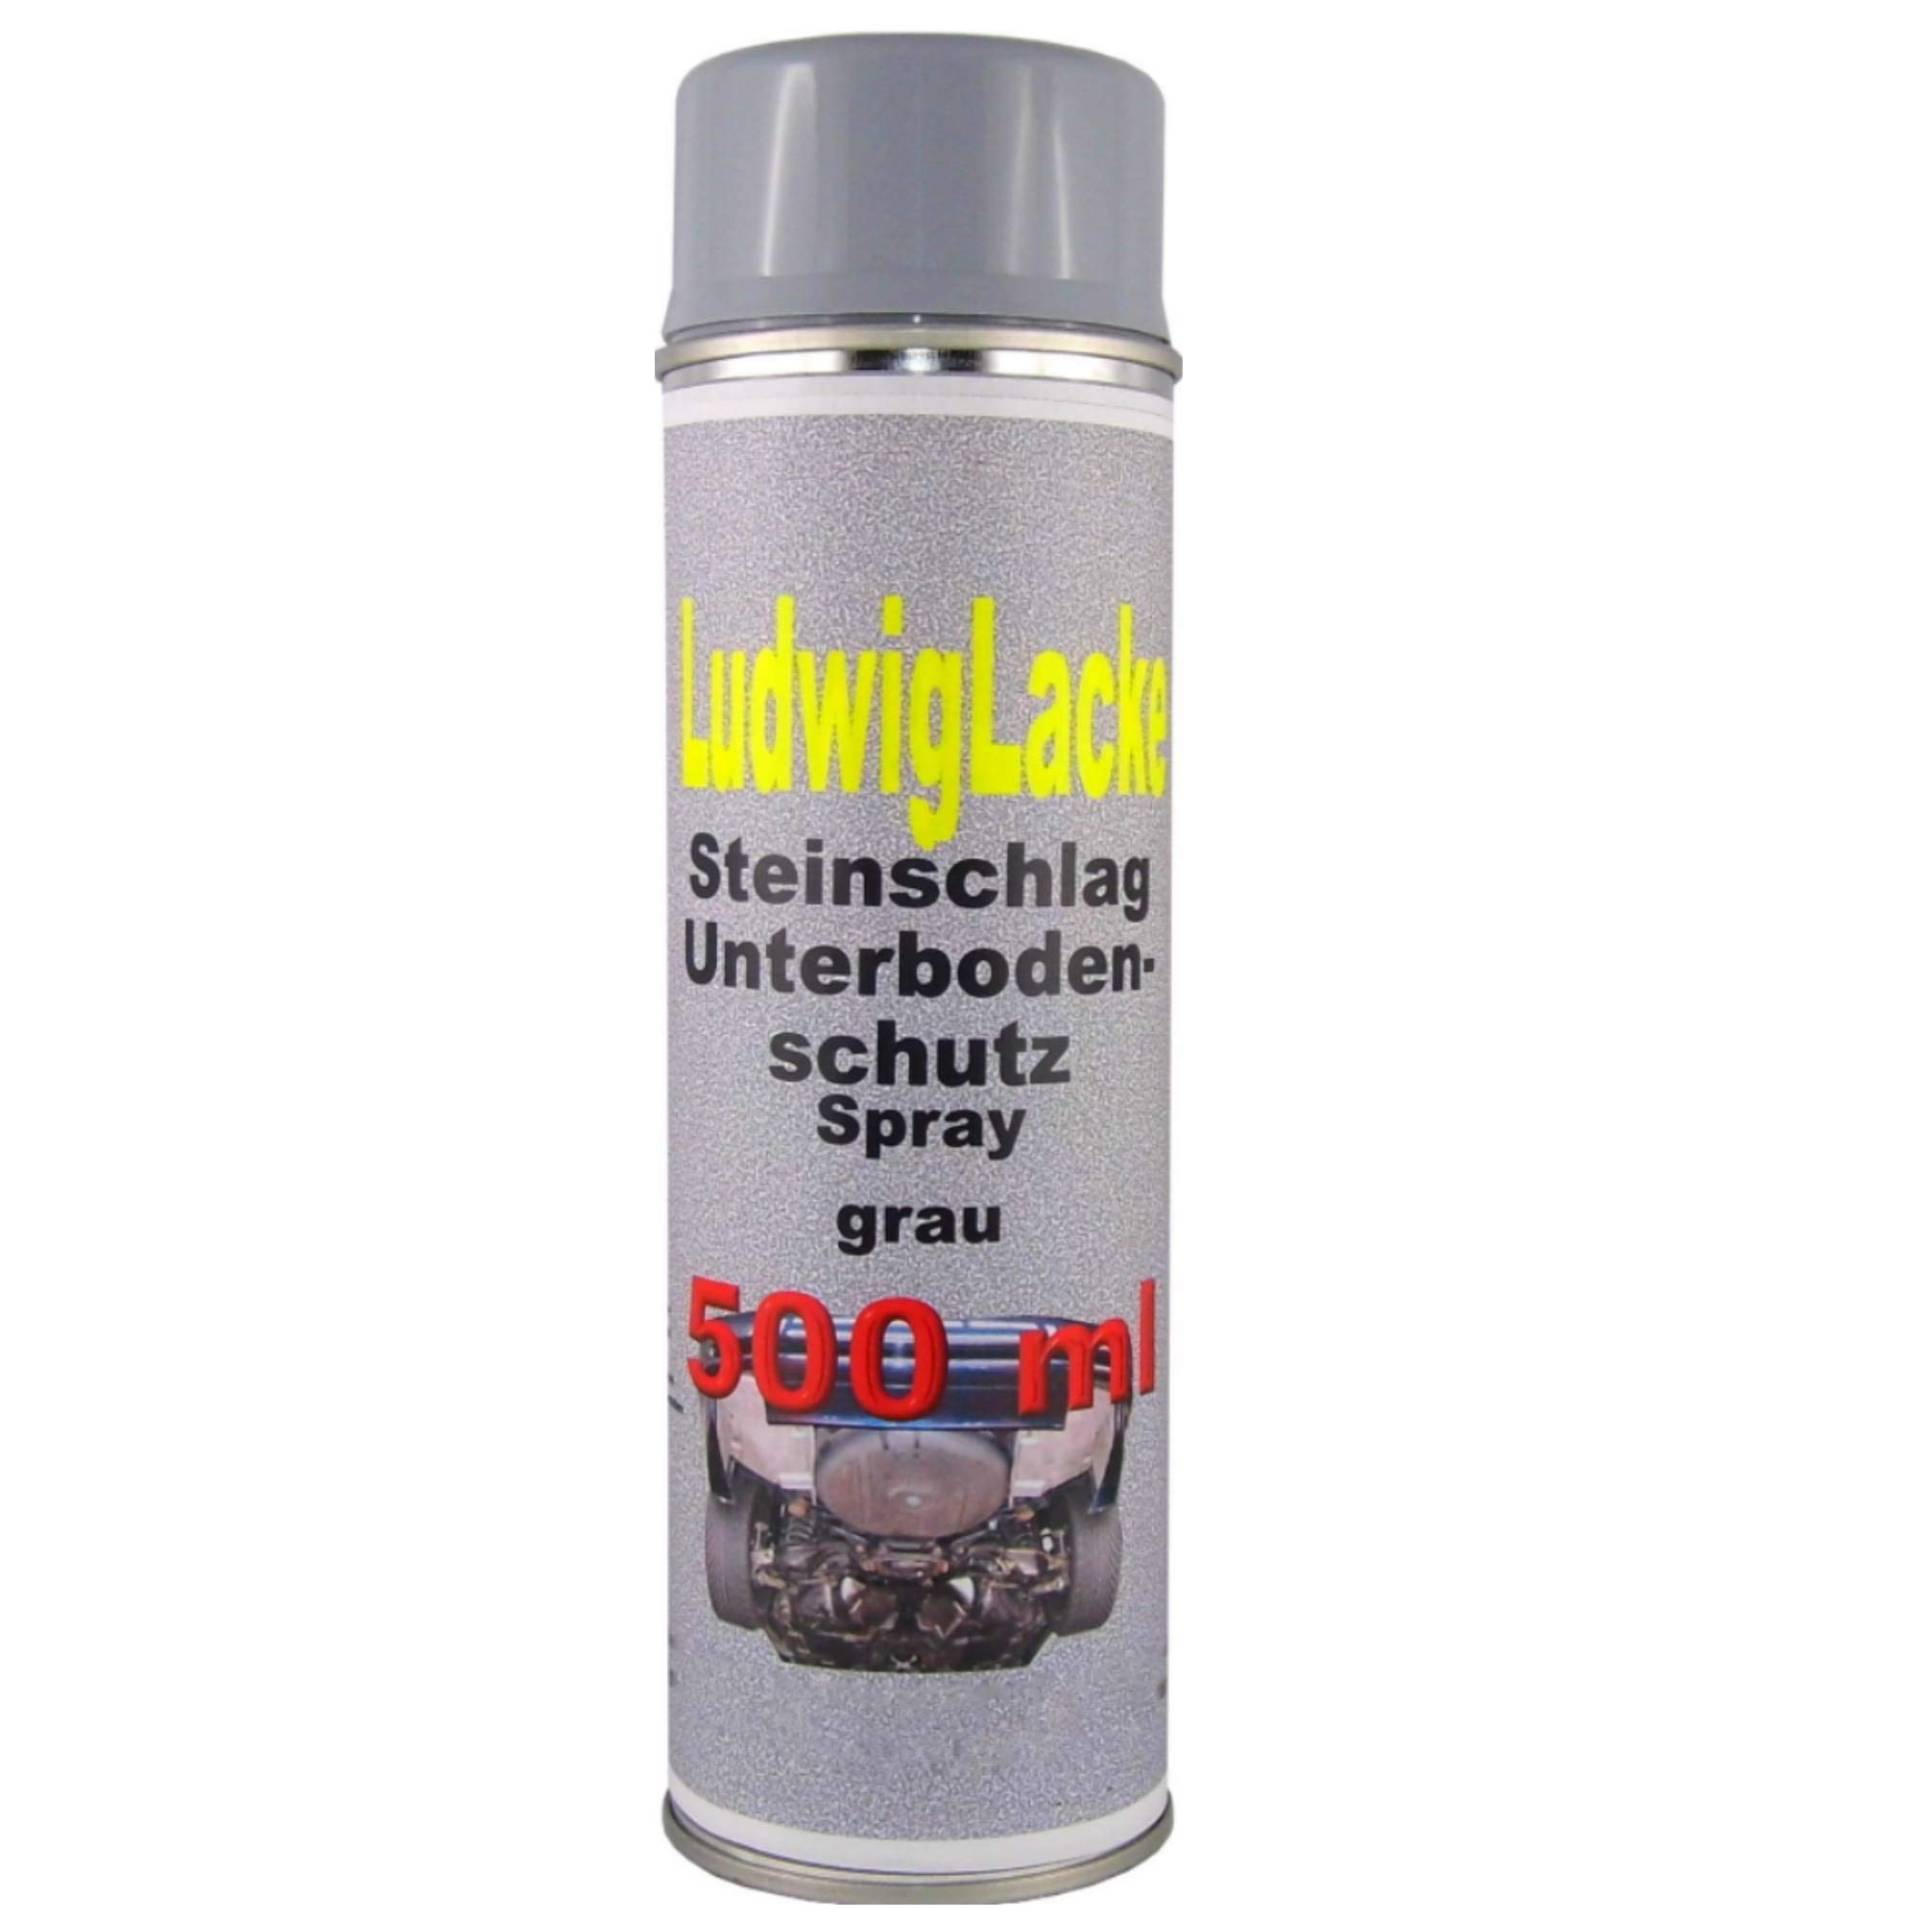 500 ml Spray Steinschlagschutz grau überlackierbar mit Autolack von Steinschlagschutz Unterbodenschutz